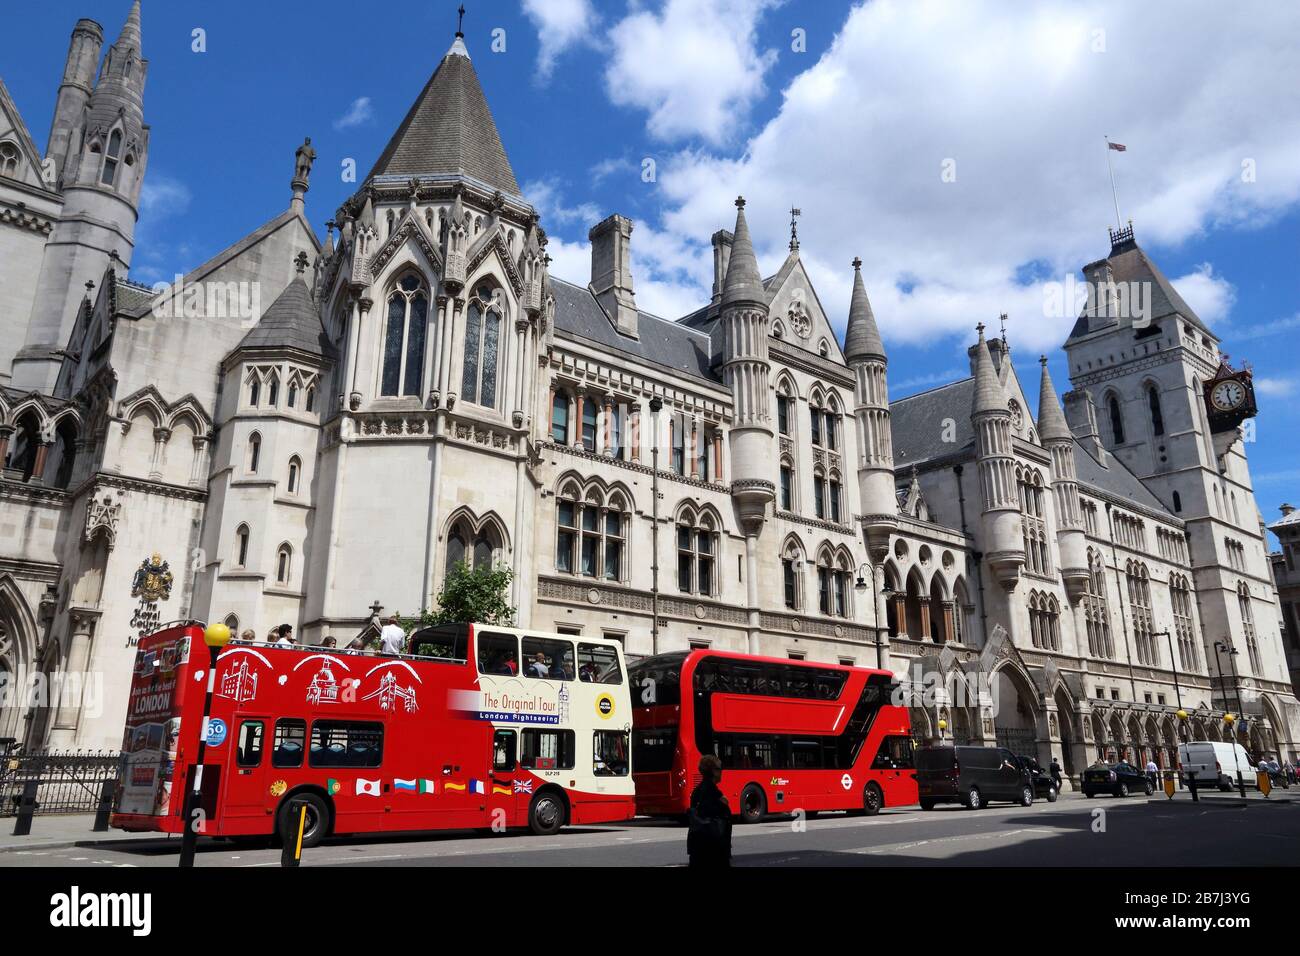 LONDRA, Regno Unito - 6 LUGLIO 2016: La gente viaggia su autobus a due piani a The Strand, Londra, Regno Unito. Il trasporto per Londra (TFL) gestisce 8,000 autobus su 673 linee. Foto Stock